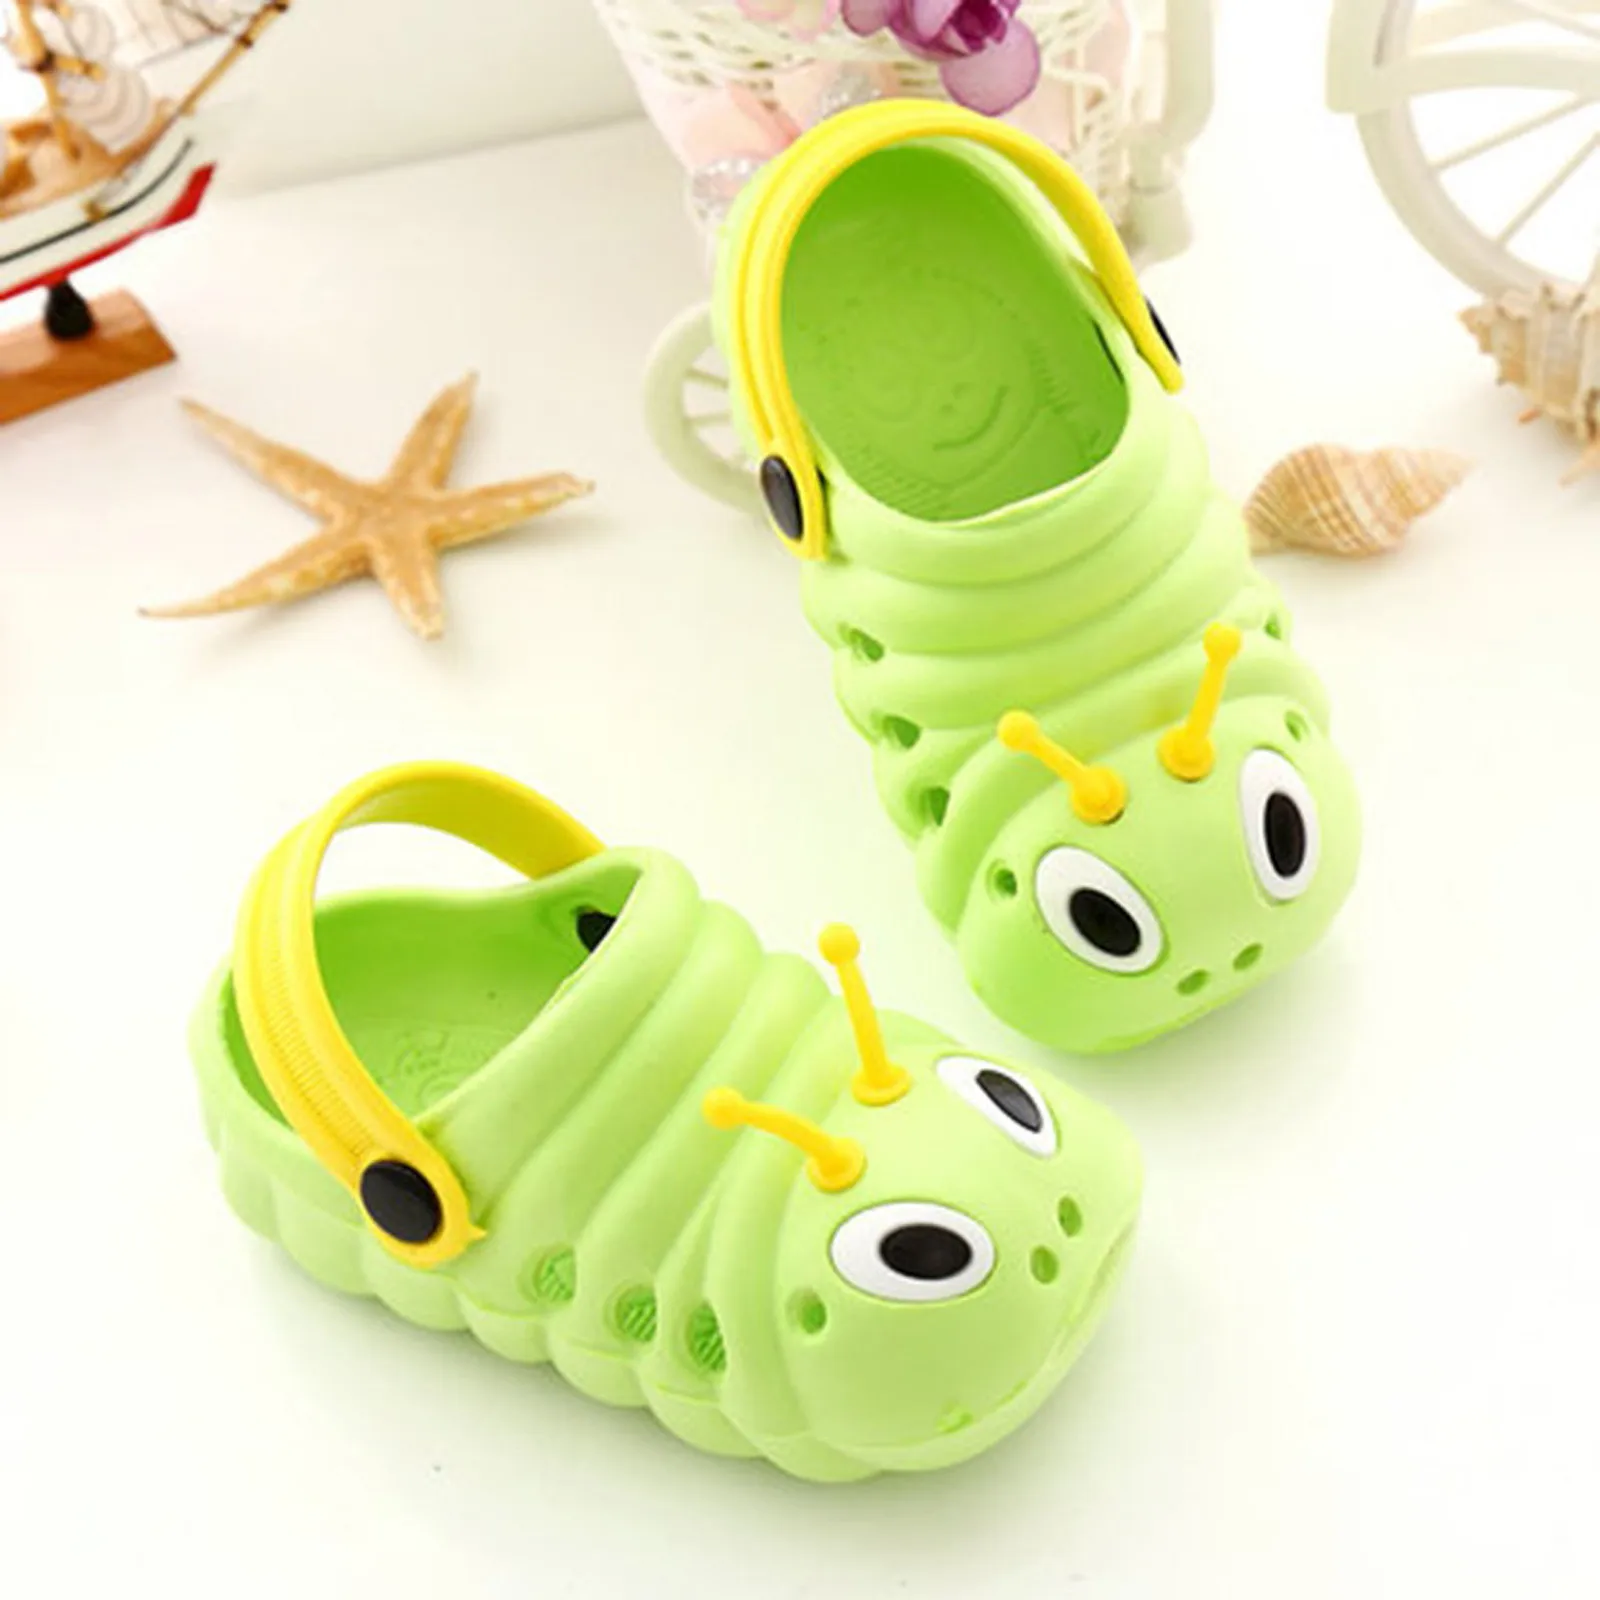 bata children's sandals Children's Cartoon  Cute Boys And Girls' Non Slip Soft Sole Slippers Sandal for girl